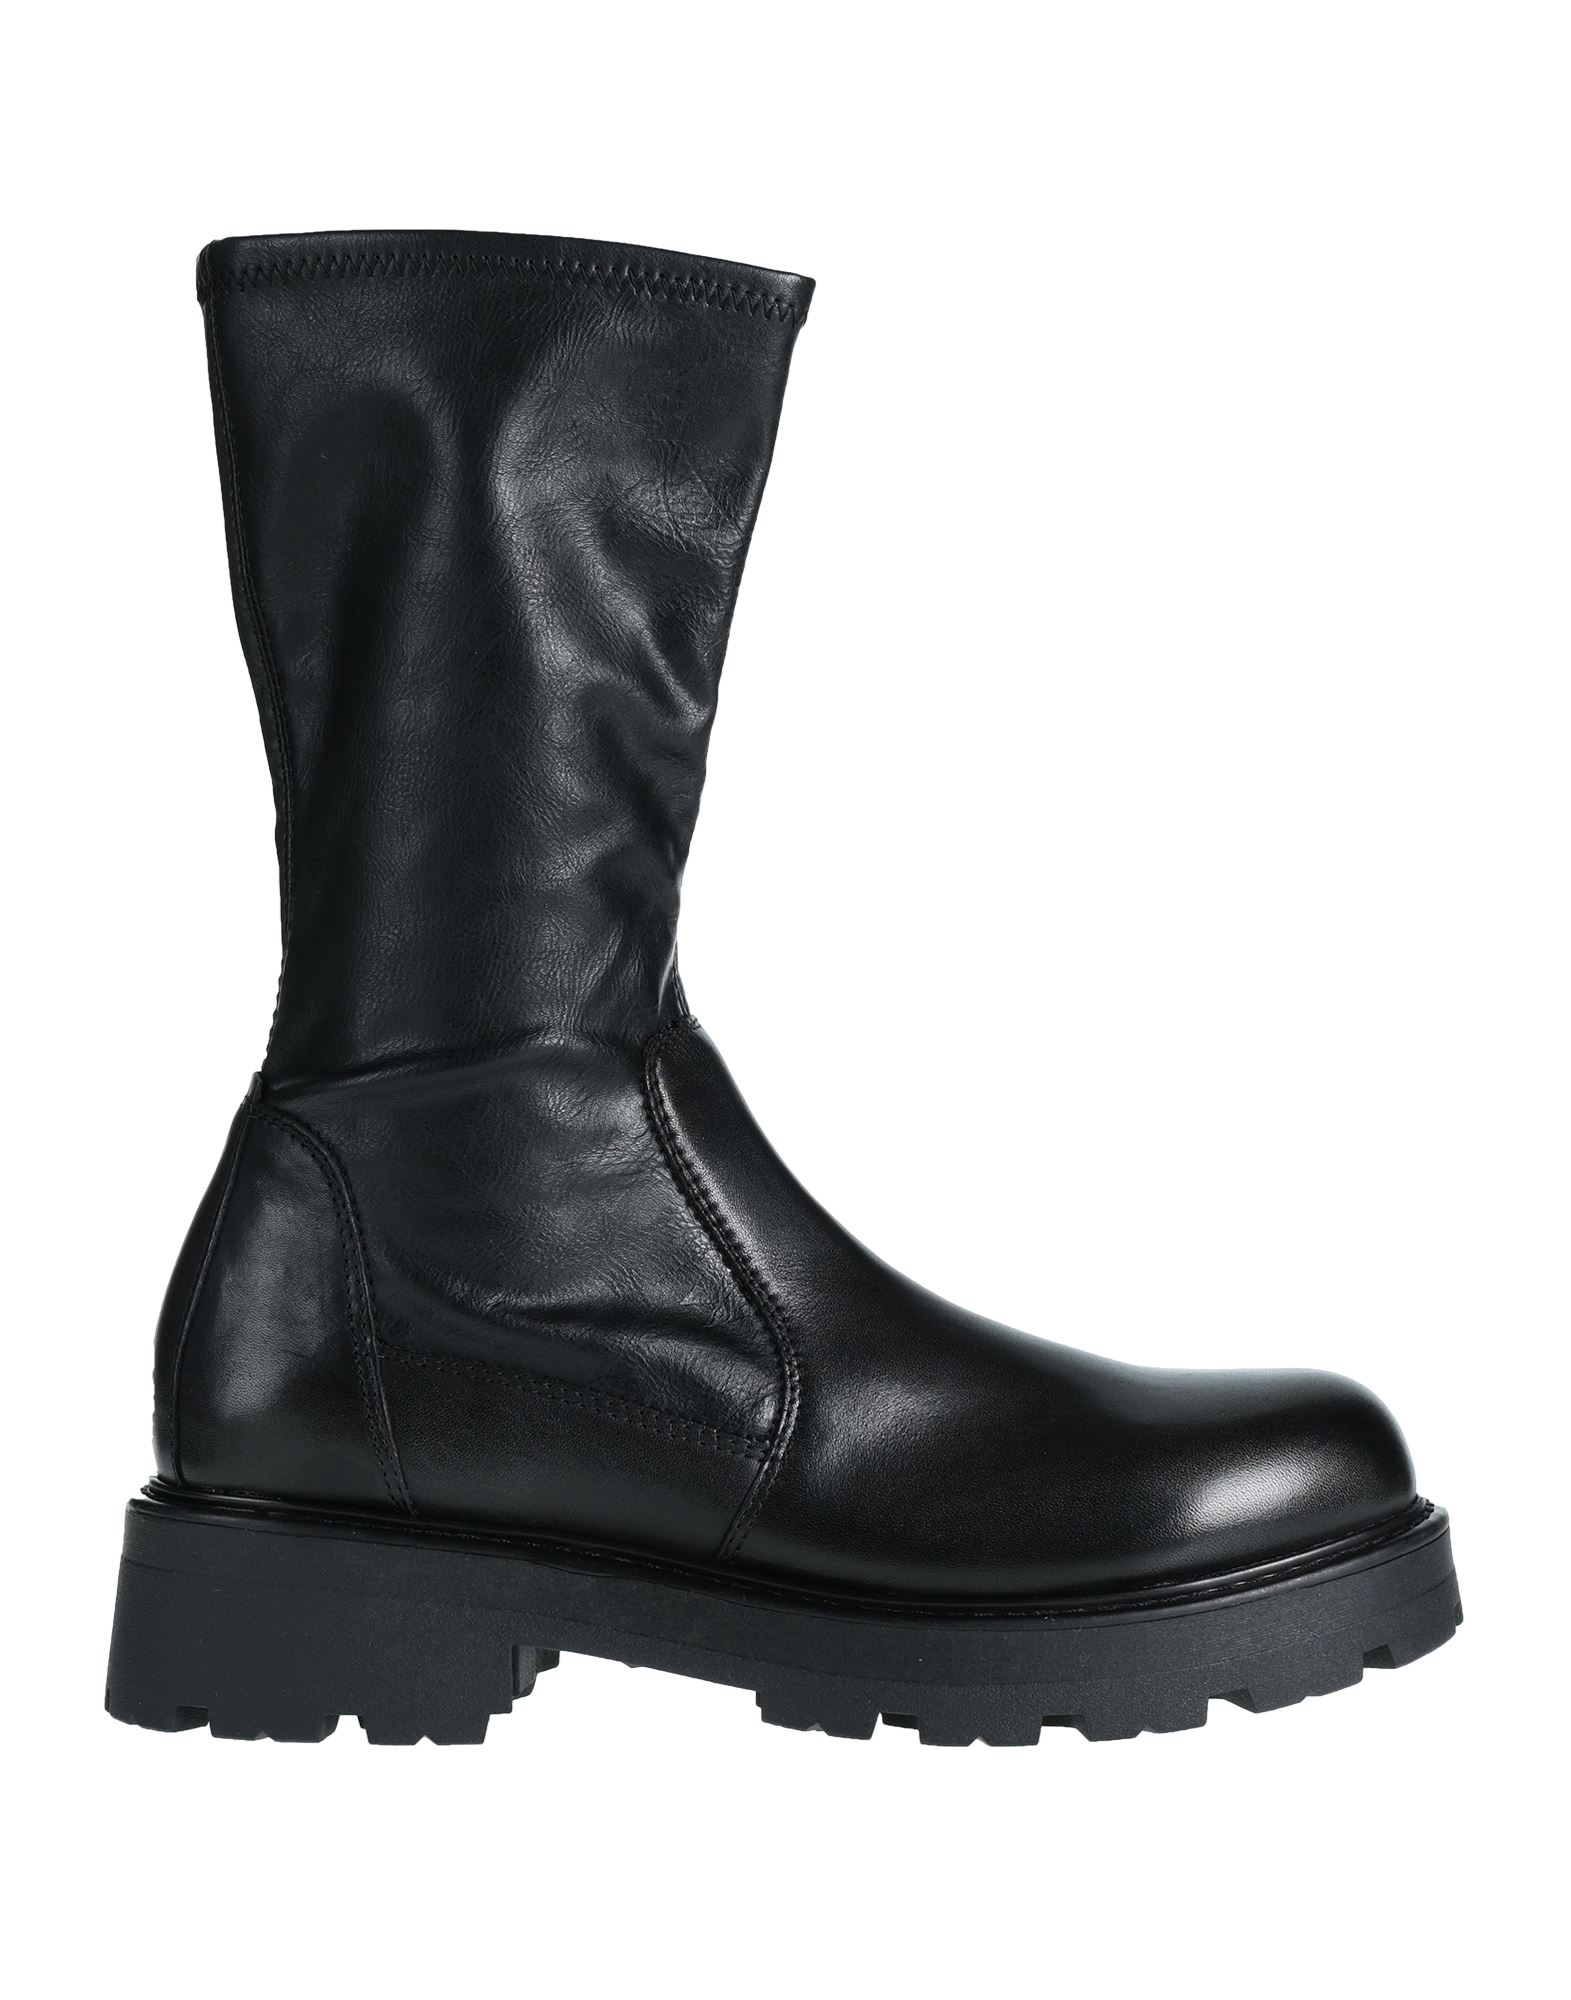 Shop Vagabond Shoemakers Woman Boot Black Size 7 Soft Leather